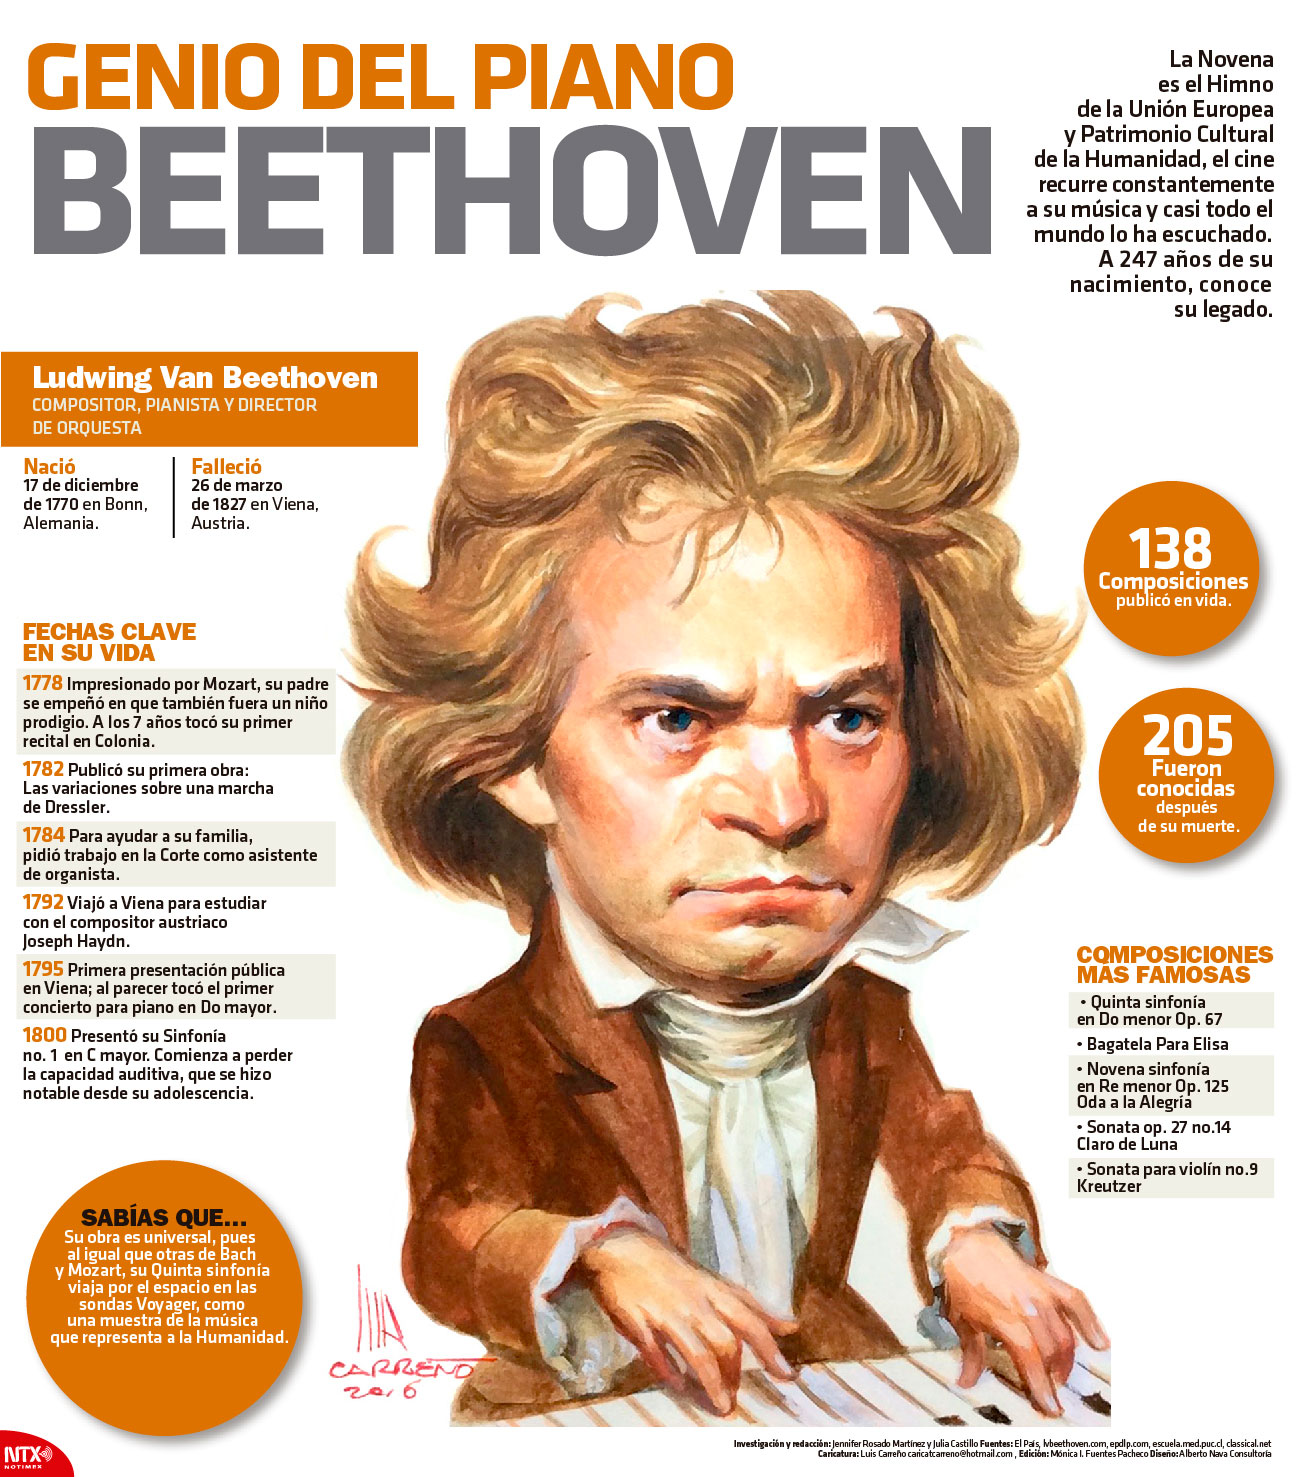 Genio del piano Beethoven